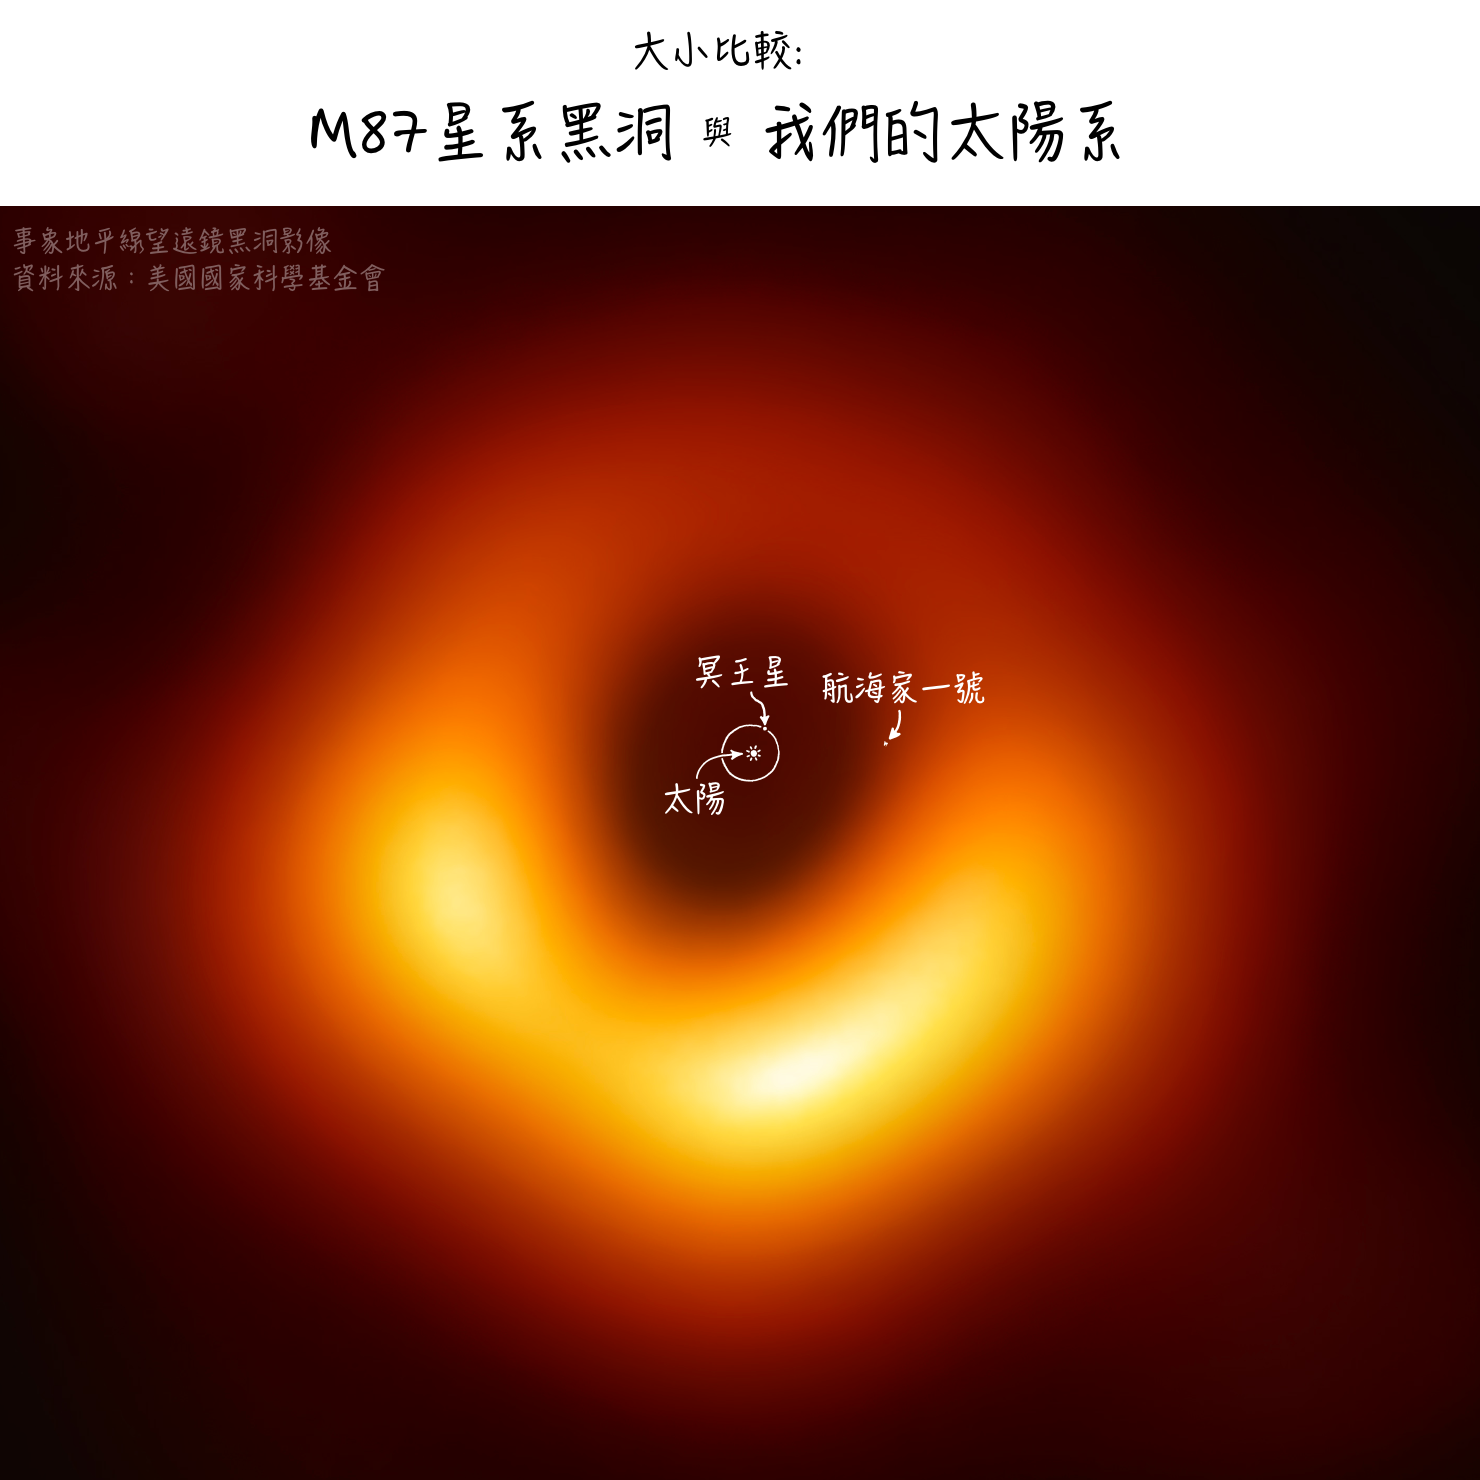 M87 黑洞大小比較